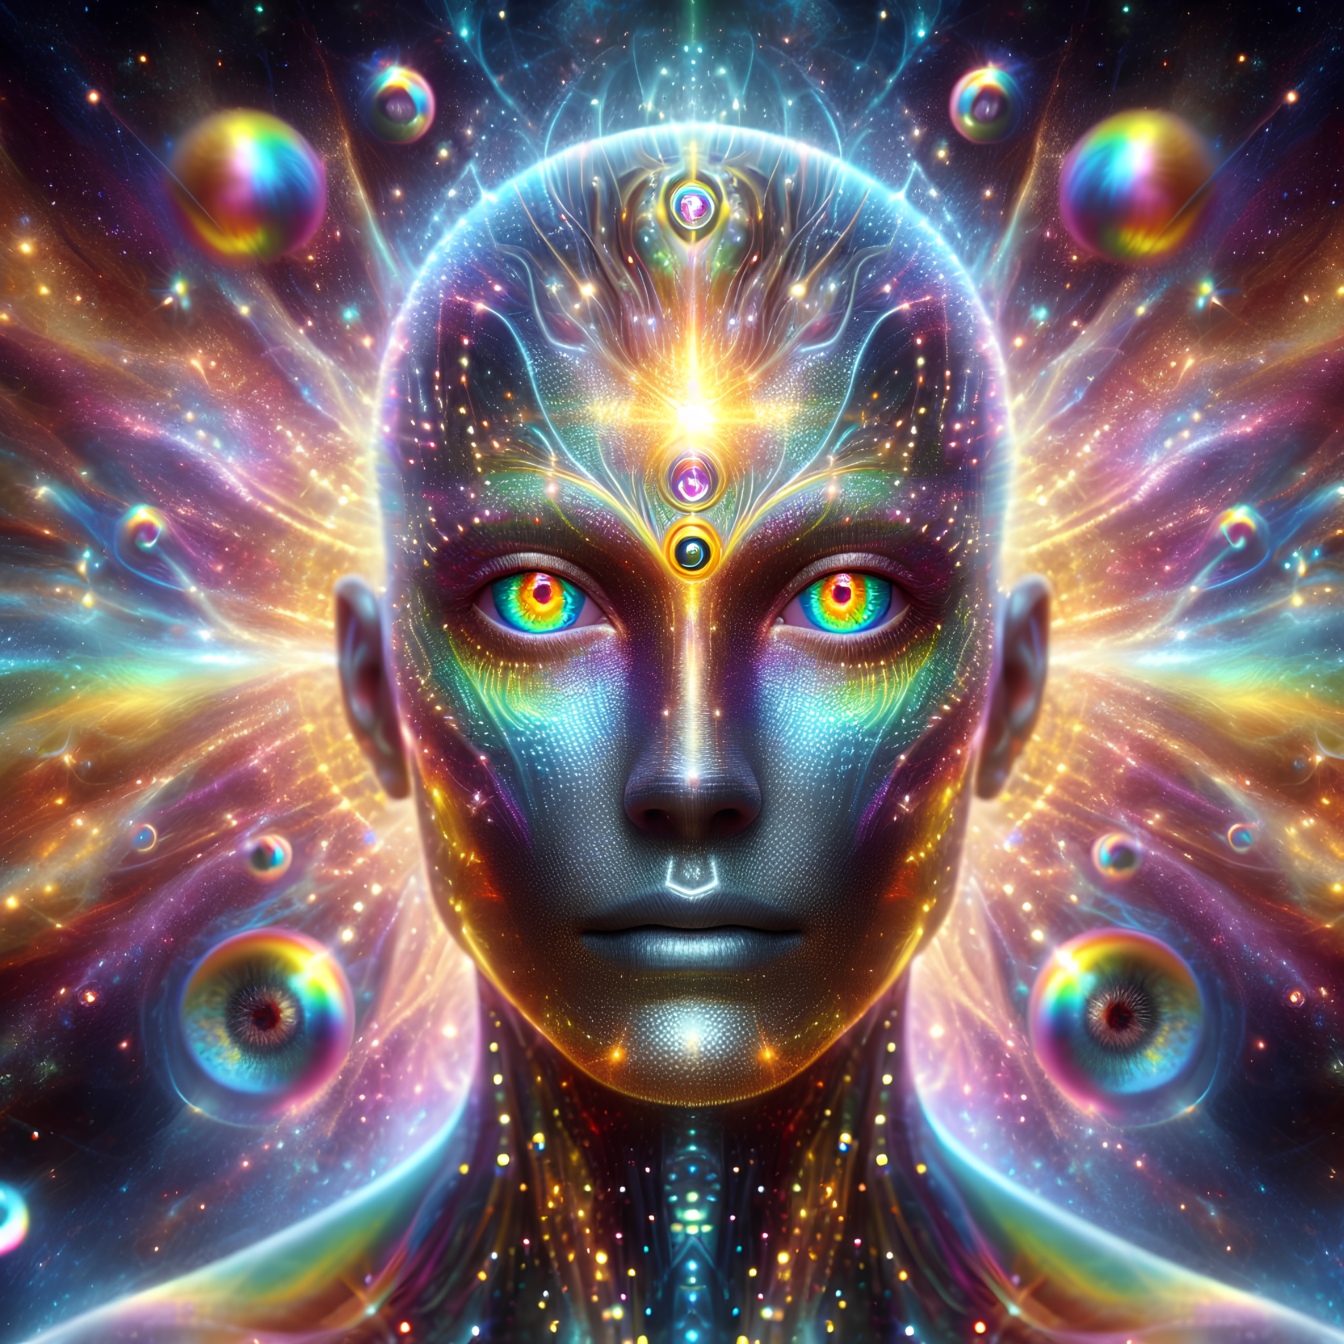 Porträt eines höheren Wesens mit den Fähigkeiten der Hypnose, des Gedankenlesens und der Vorhersage der Zukunft mit Hilfe der Astrologie